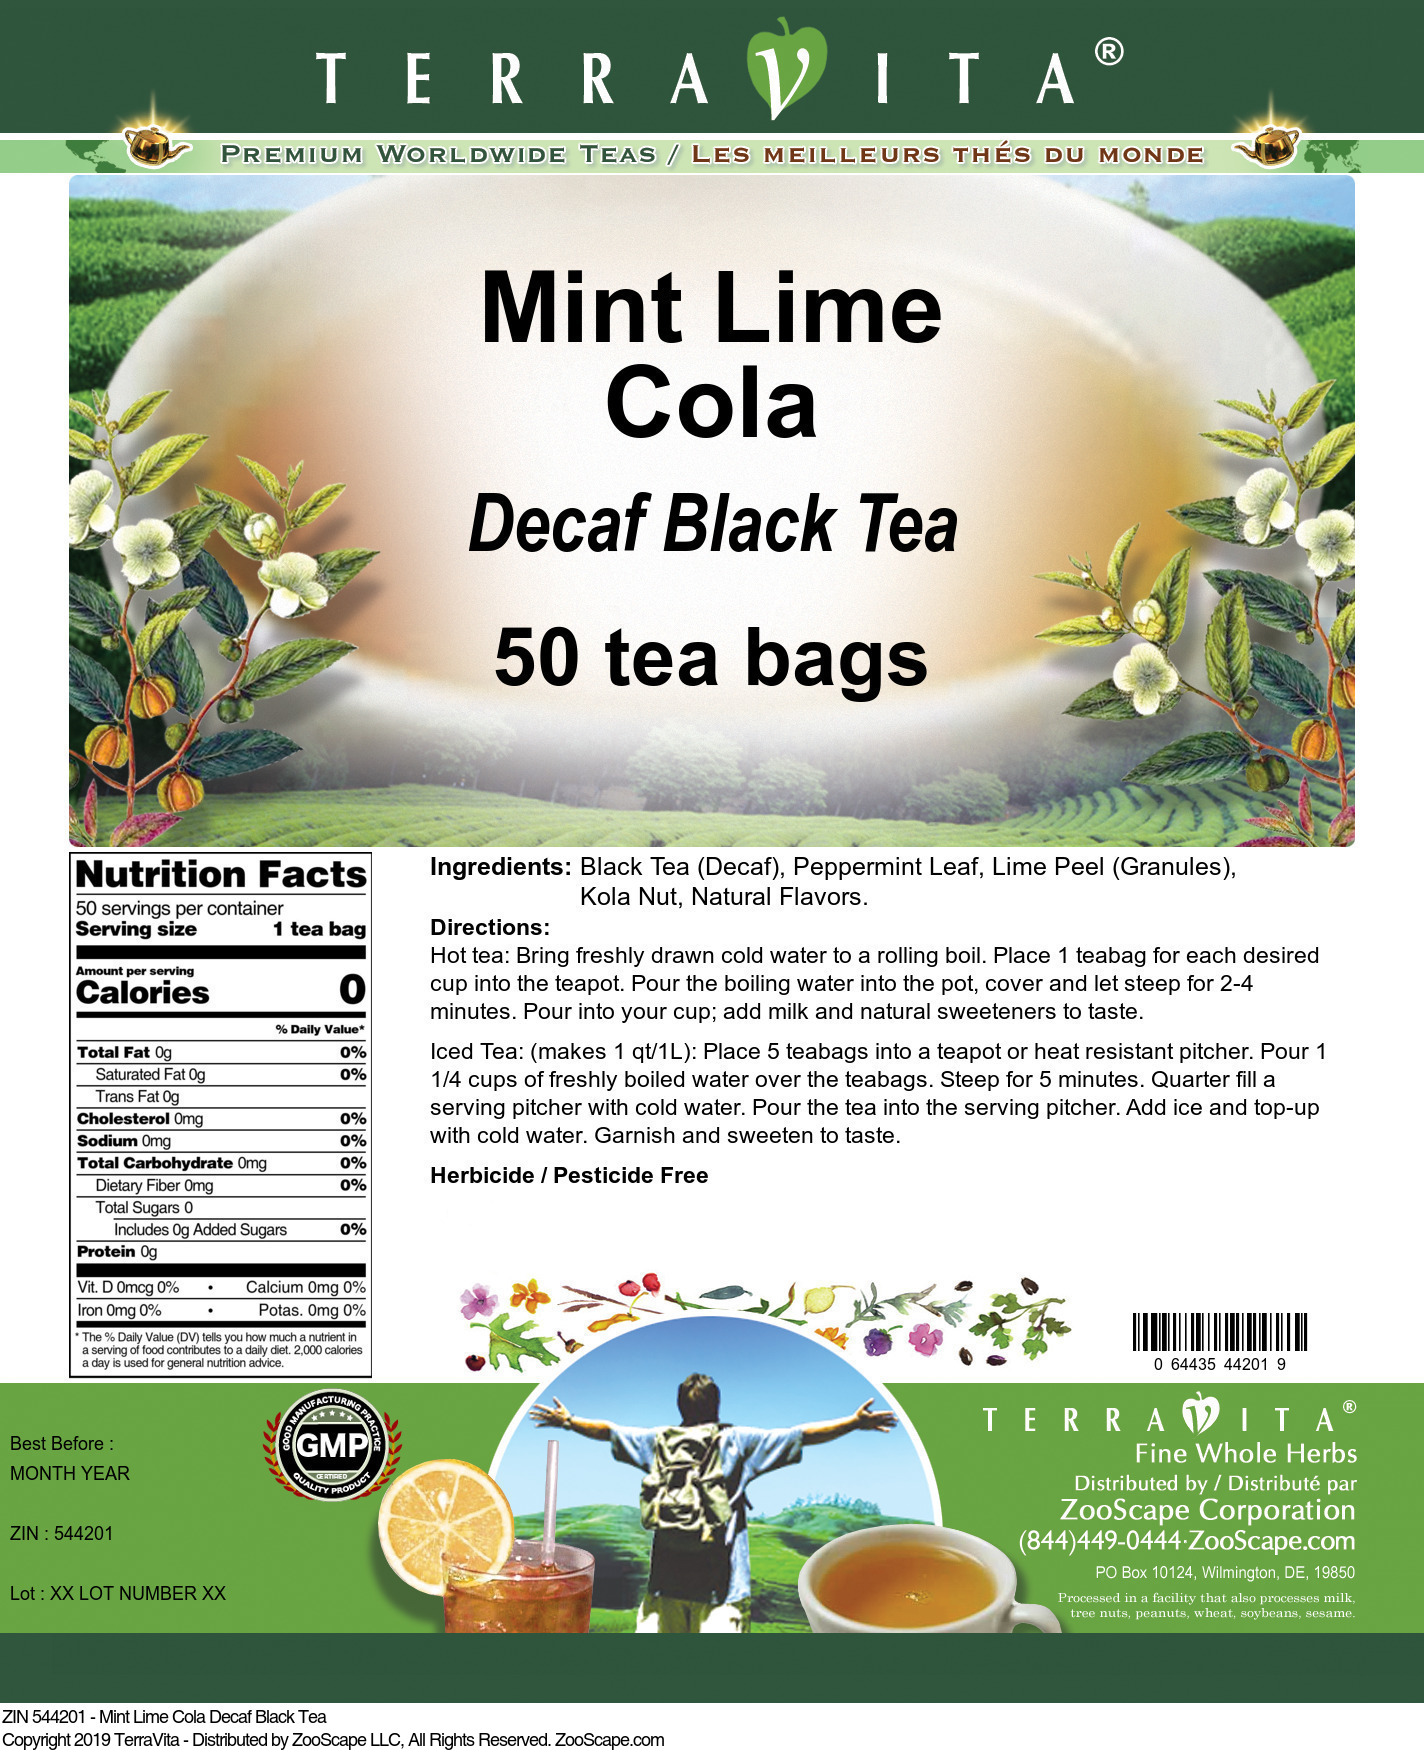 Mint Lime Cola Decaf Black Tea - Label